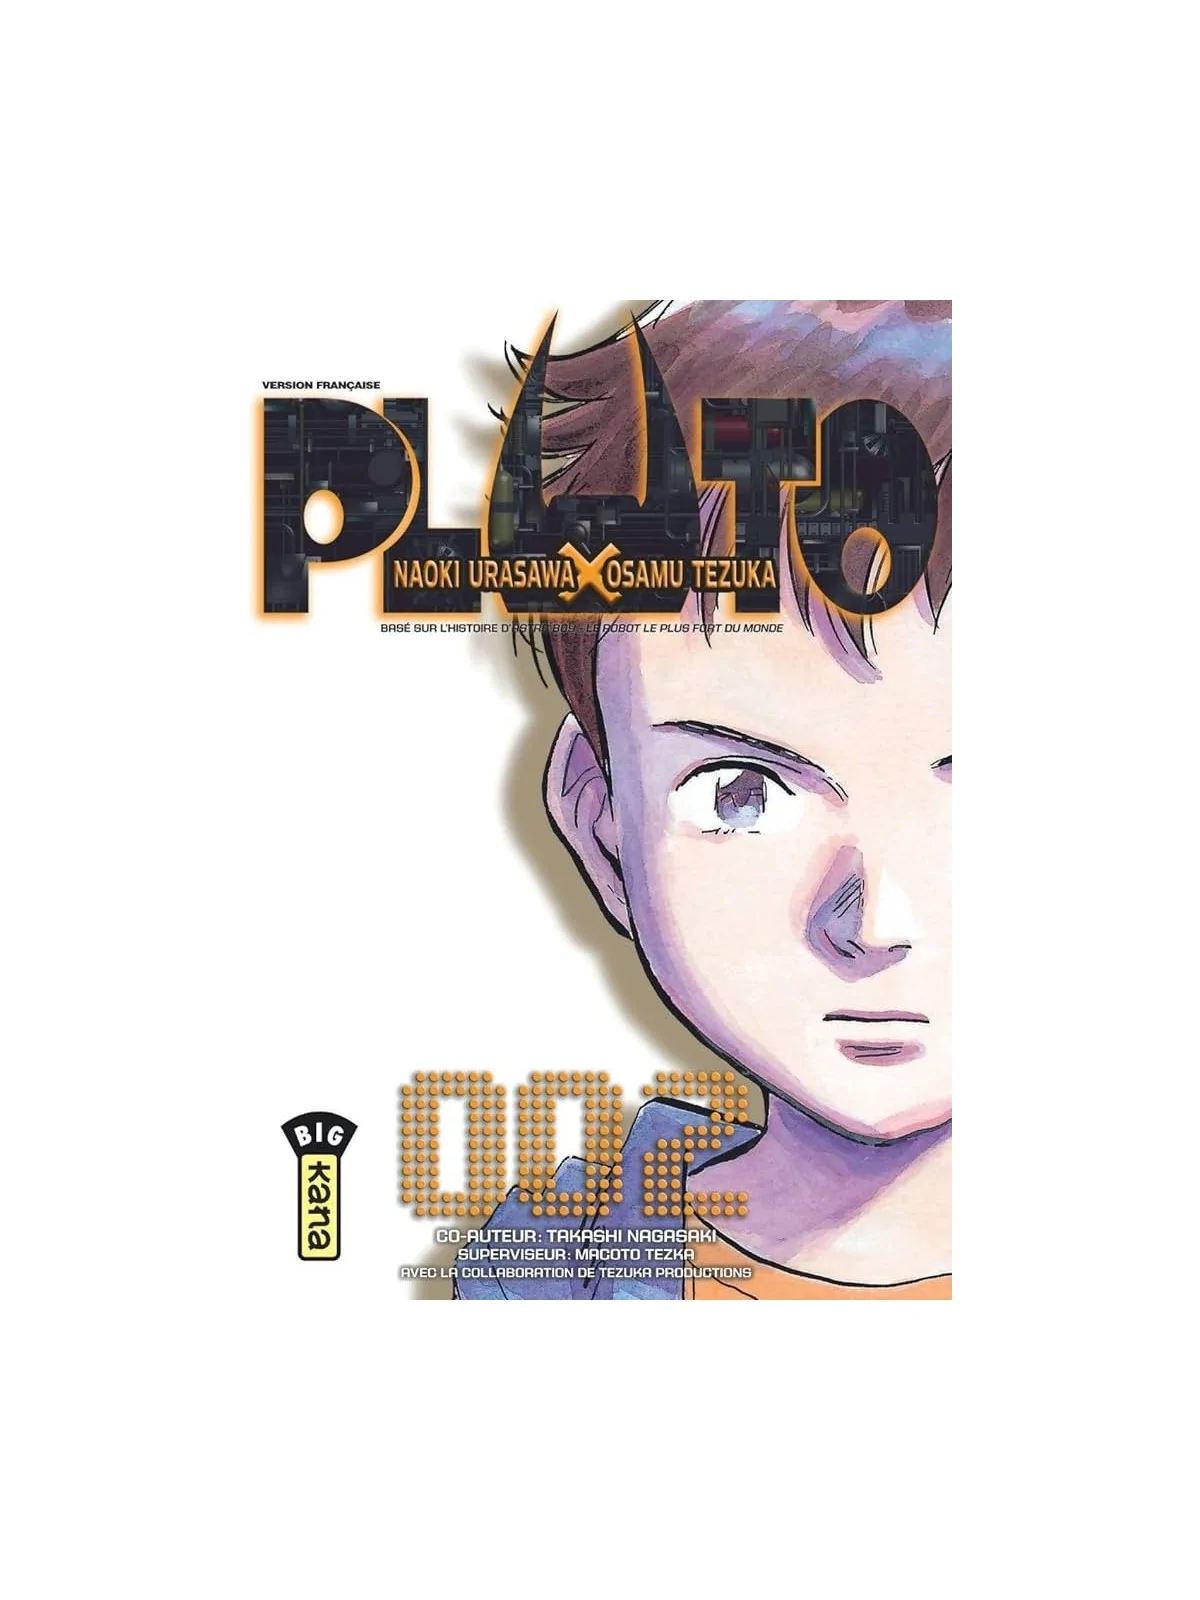 Comprar Pluto 02 barato al mejor precio 9,02 € de Planeta Comic